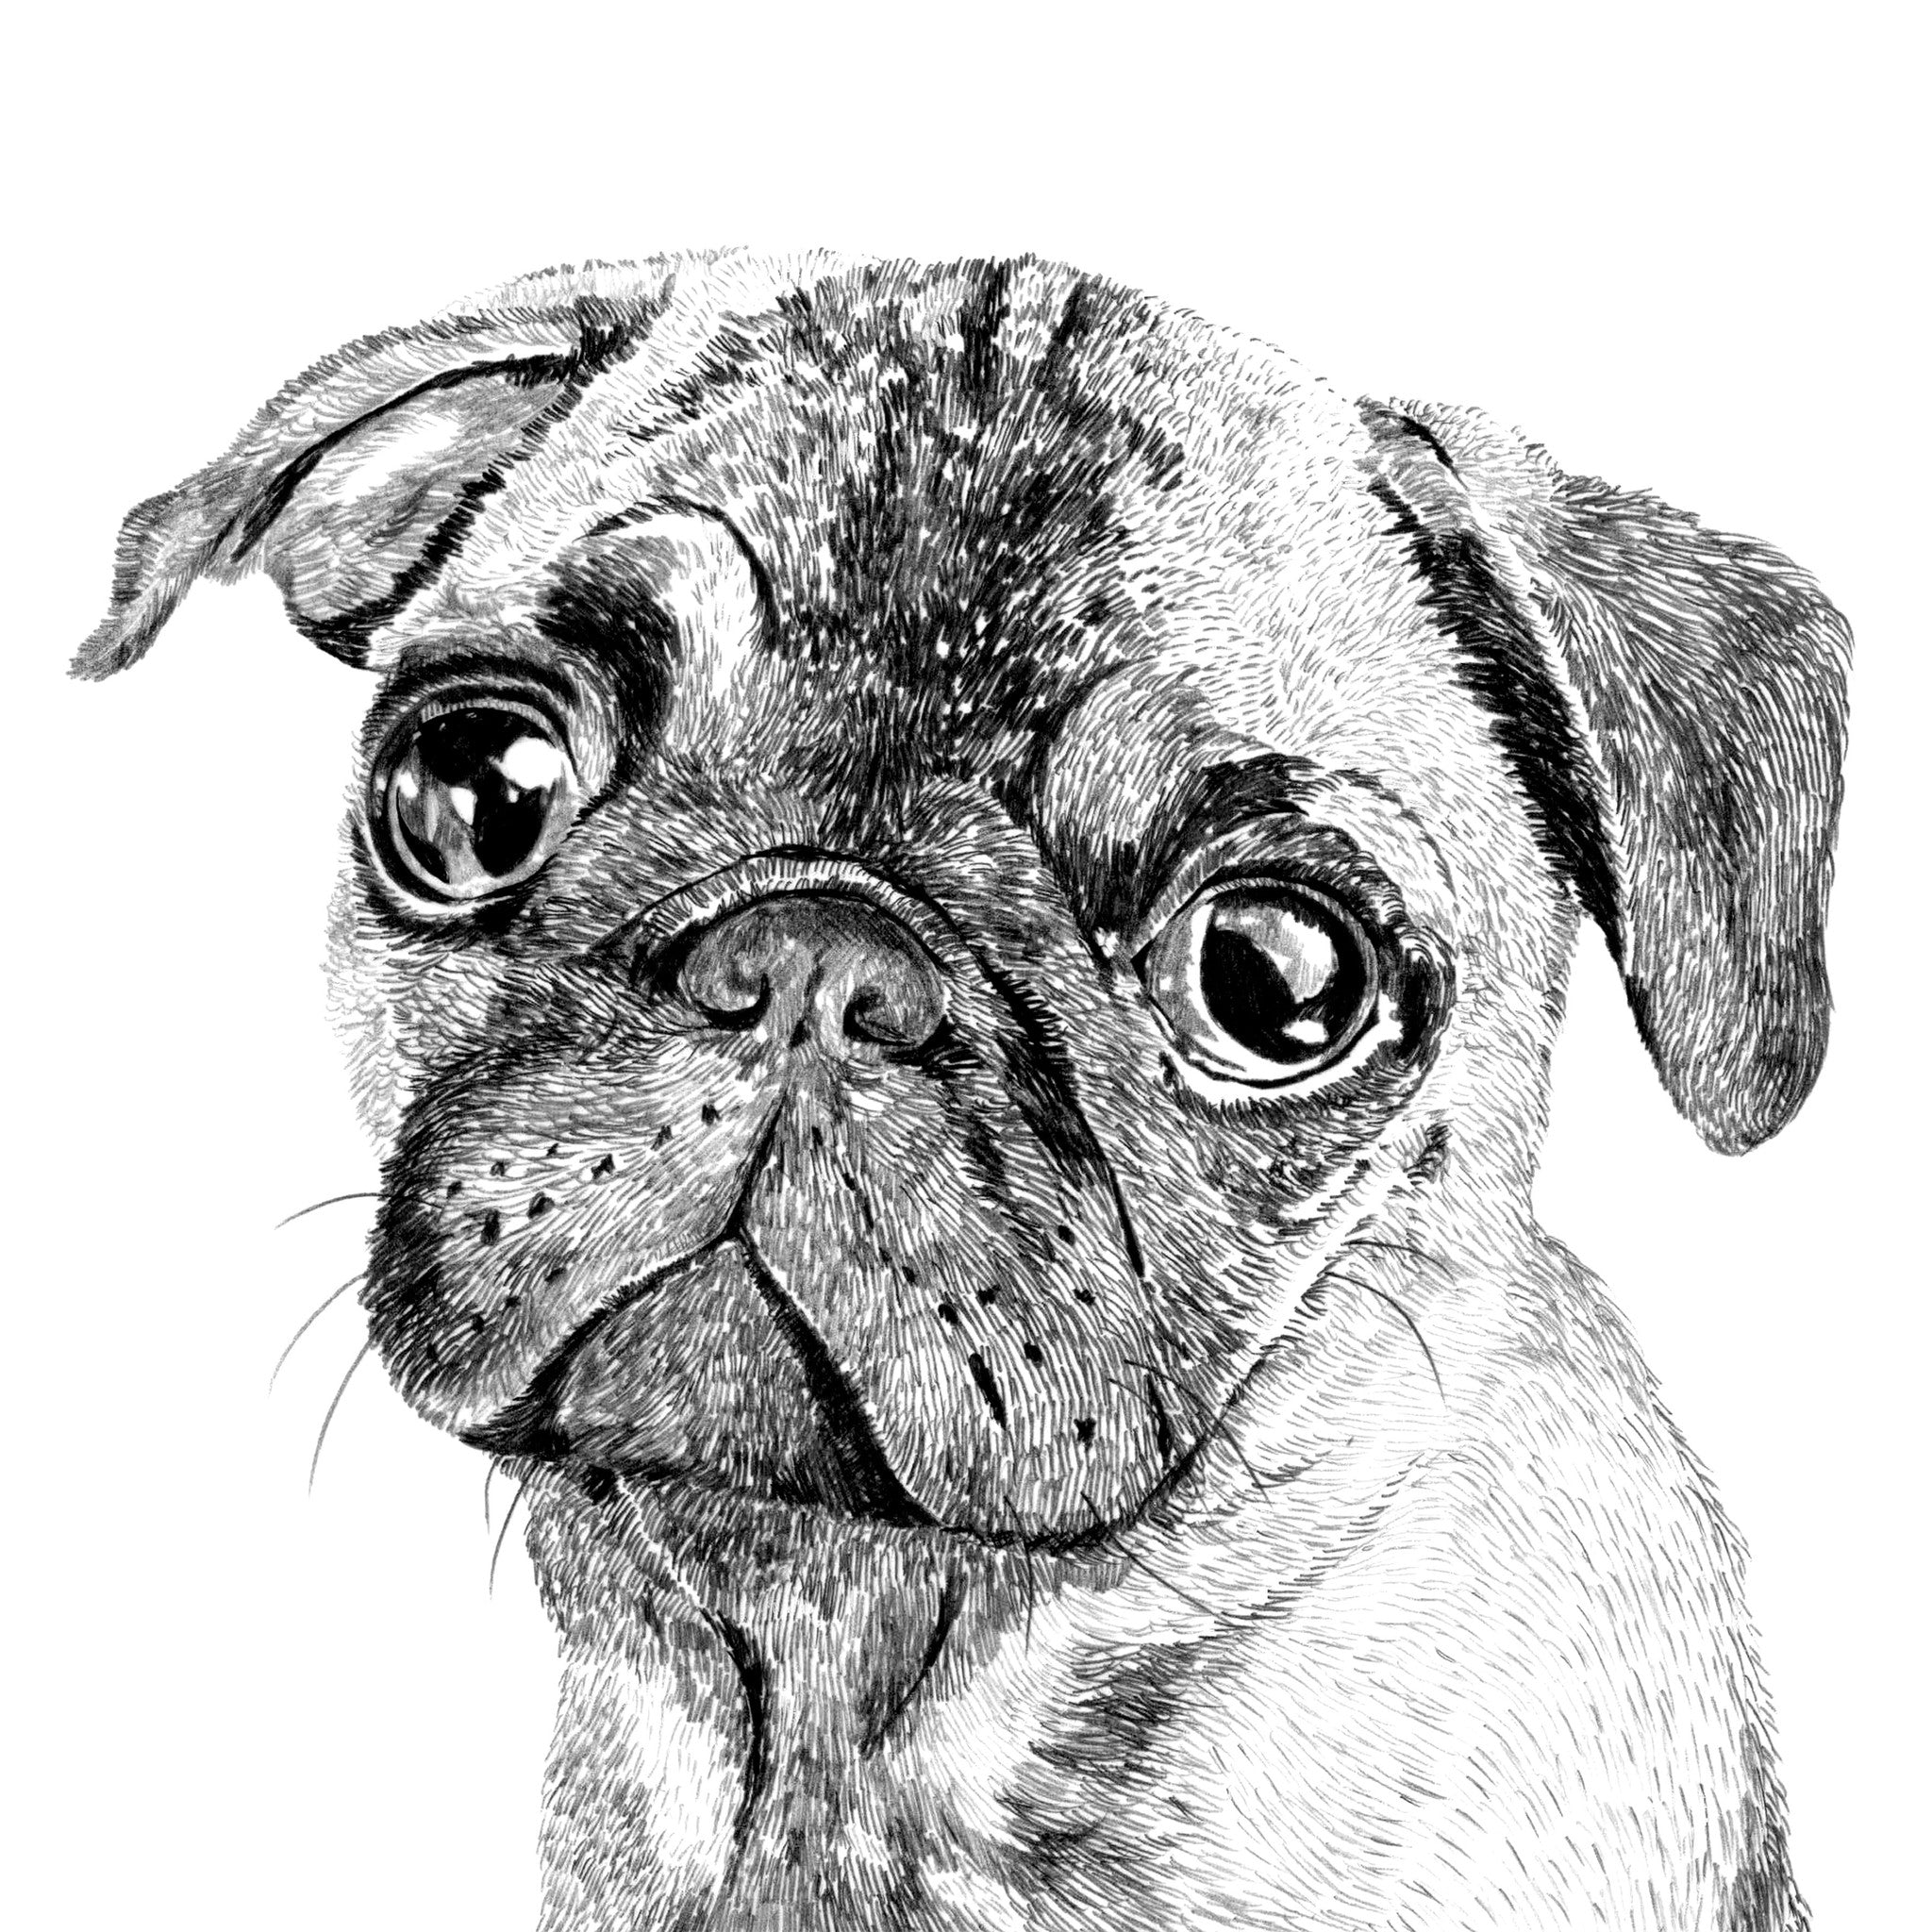 Pug Dog Print